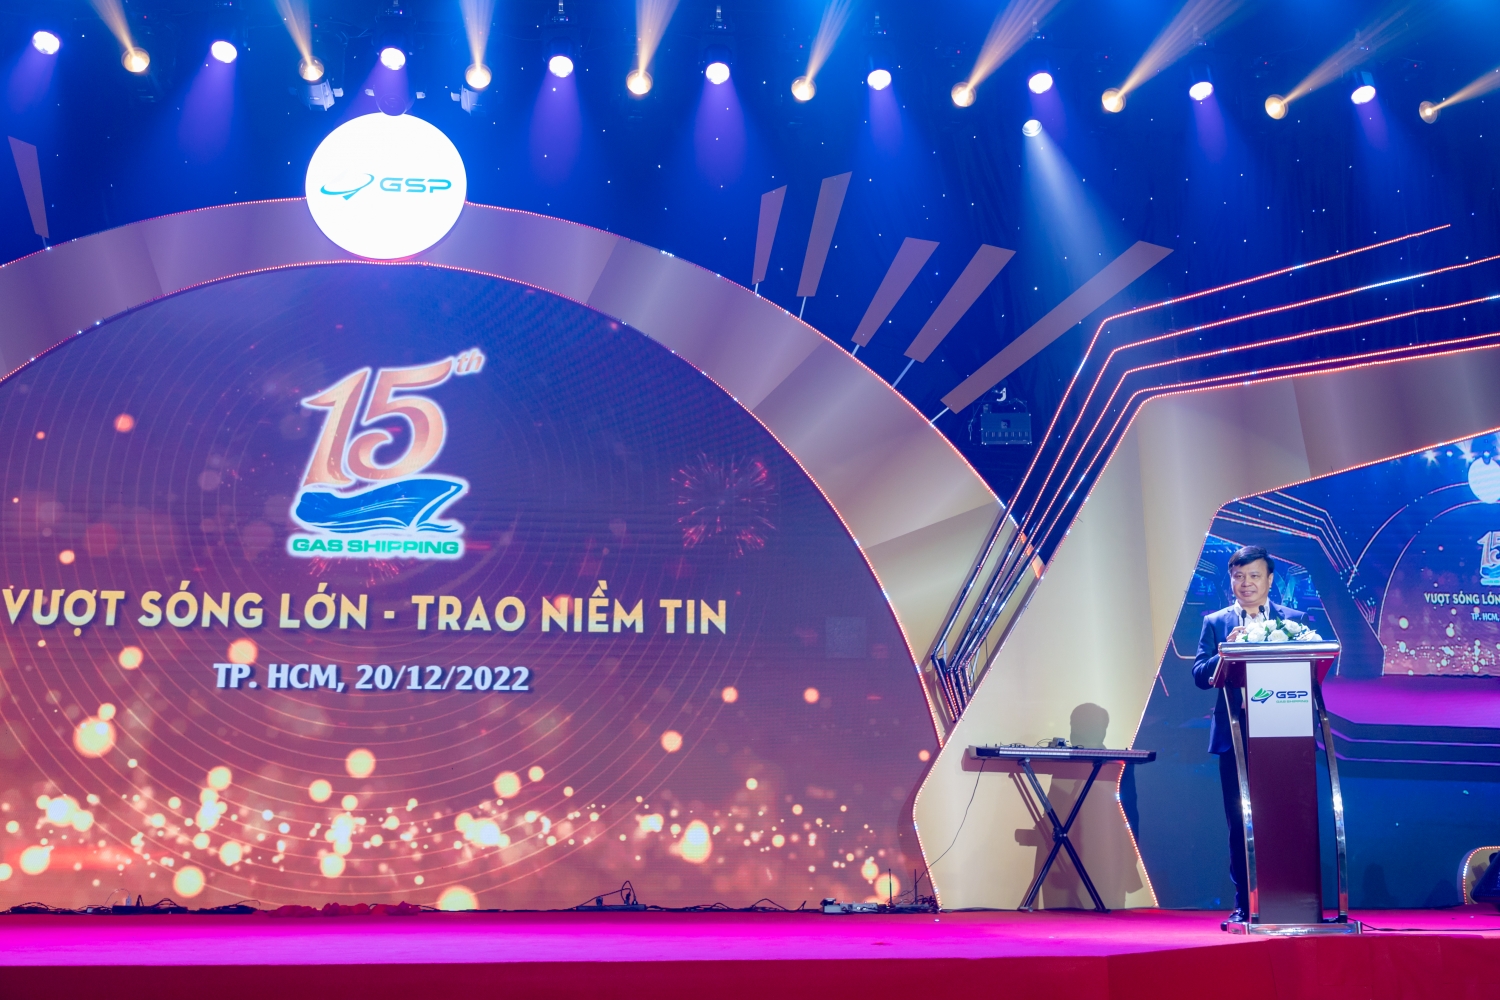 Ông Phạm Việt Anh - Bí thư Đảng Ủy, Chủ tịch HĐQT Tổng Công ty PVTrans phát biểu cảm nghĩ về những ngày đầu thành lập Công ty Gas Shipping.